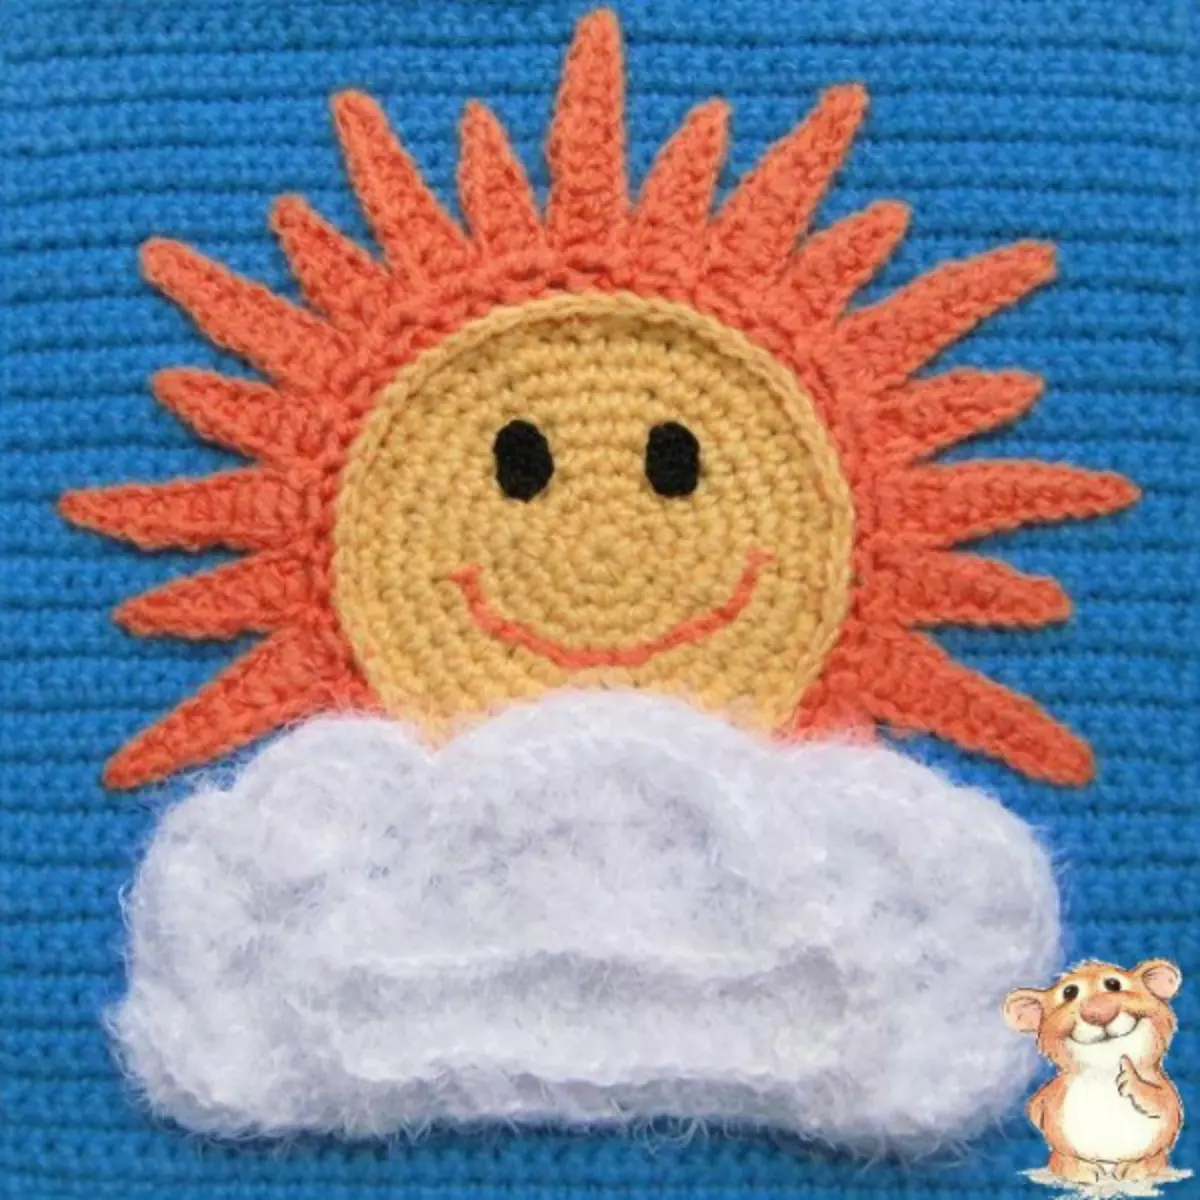 Ama-appliques e-Crochet: amacebo nencazelo yezingubo zezingane ngevidiyo